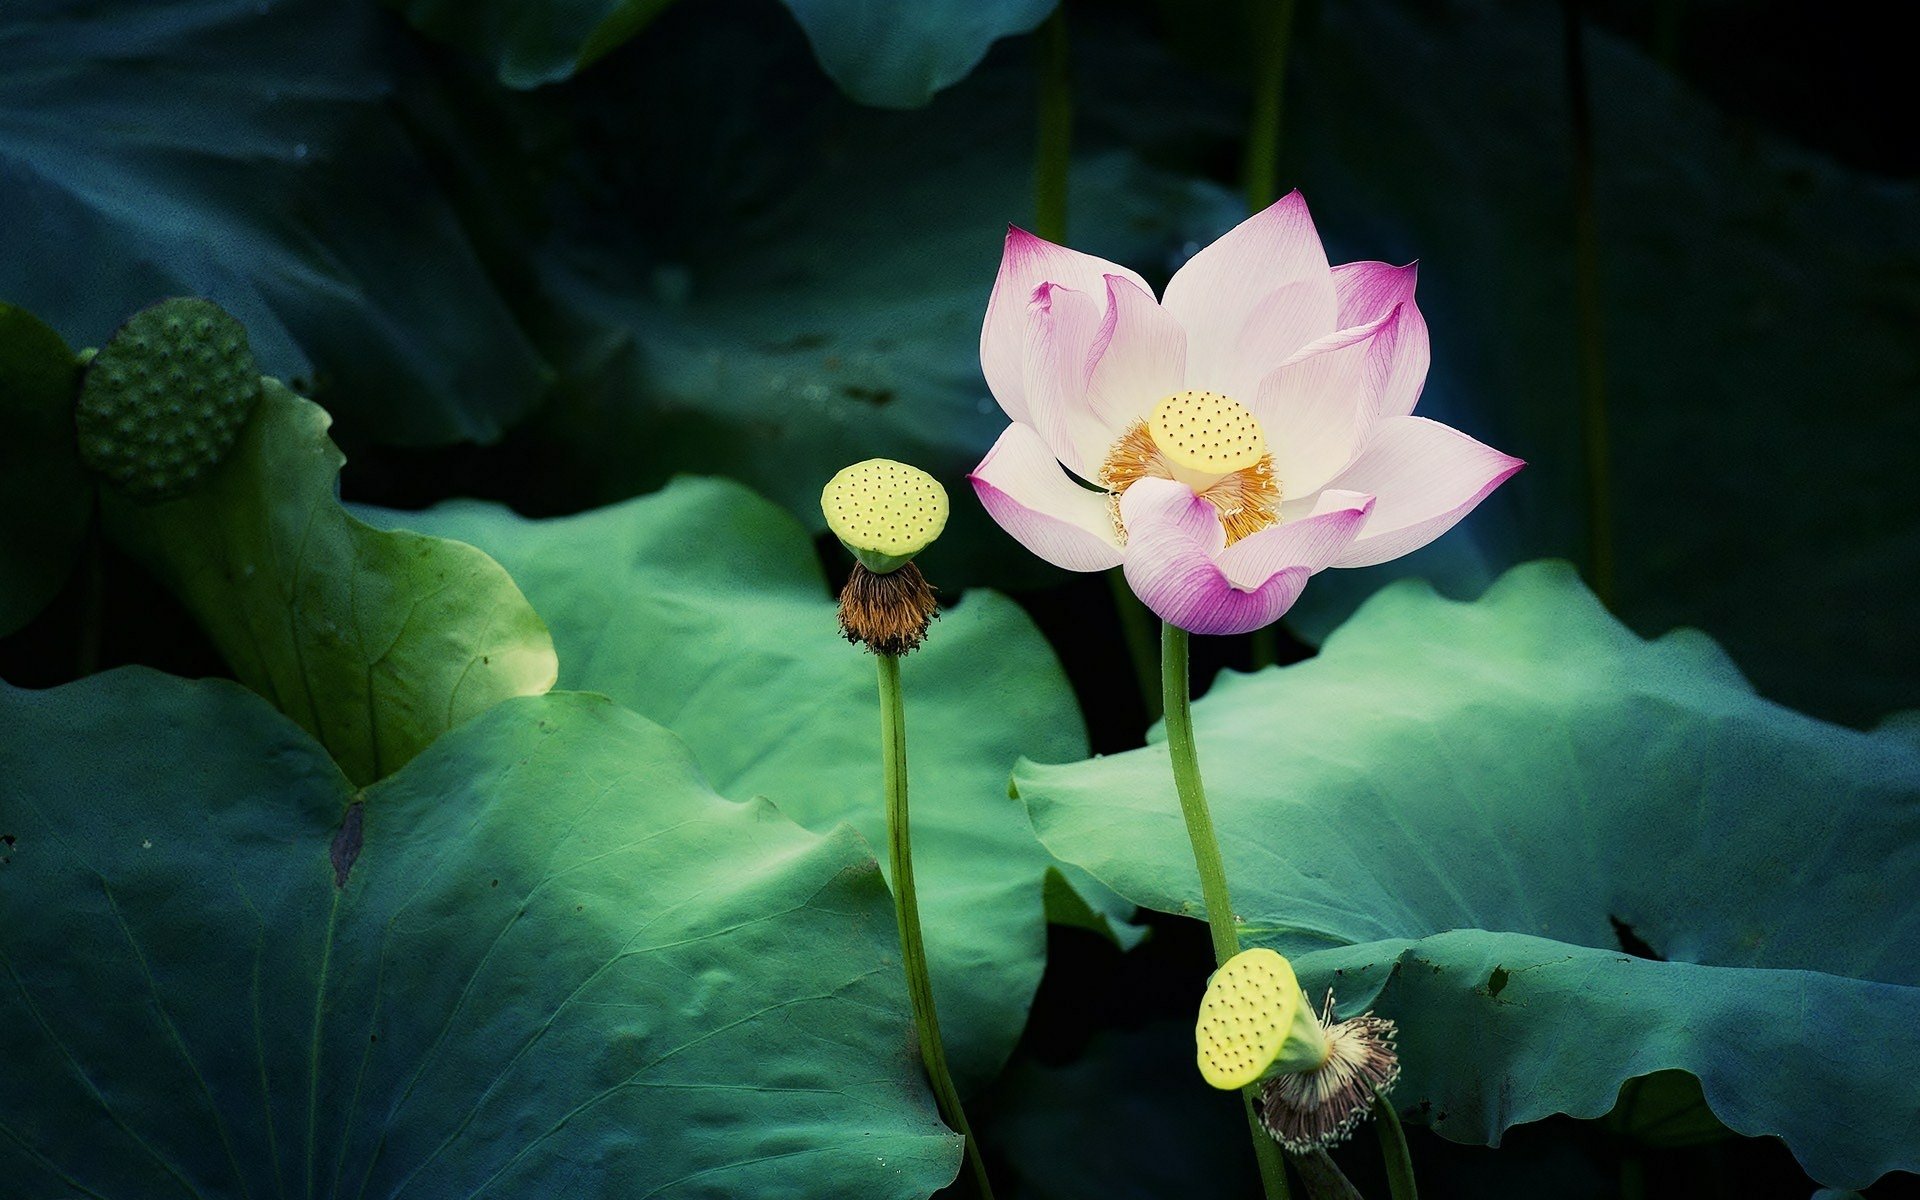 Là loài hoa thường thấy tại Việt Nam, lotus có một sức hút đặc biệt với sự vẻ đẹp thanh thoát và sự mong muốn trầm mặc của người Chuẩn Tông. Hãy cùng ngắm nhìn những hình ảnh đẹp nhất của hoa sen và hoa sen đóa nở rực rỡ giữa bệ sen. Cảm nhận vẻ đẹp tuyệt vời mà loài hoa này mang lại.